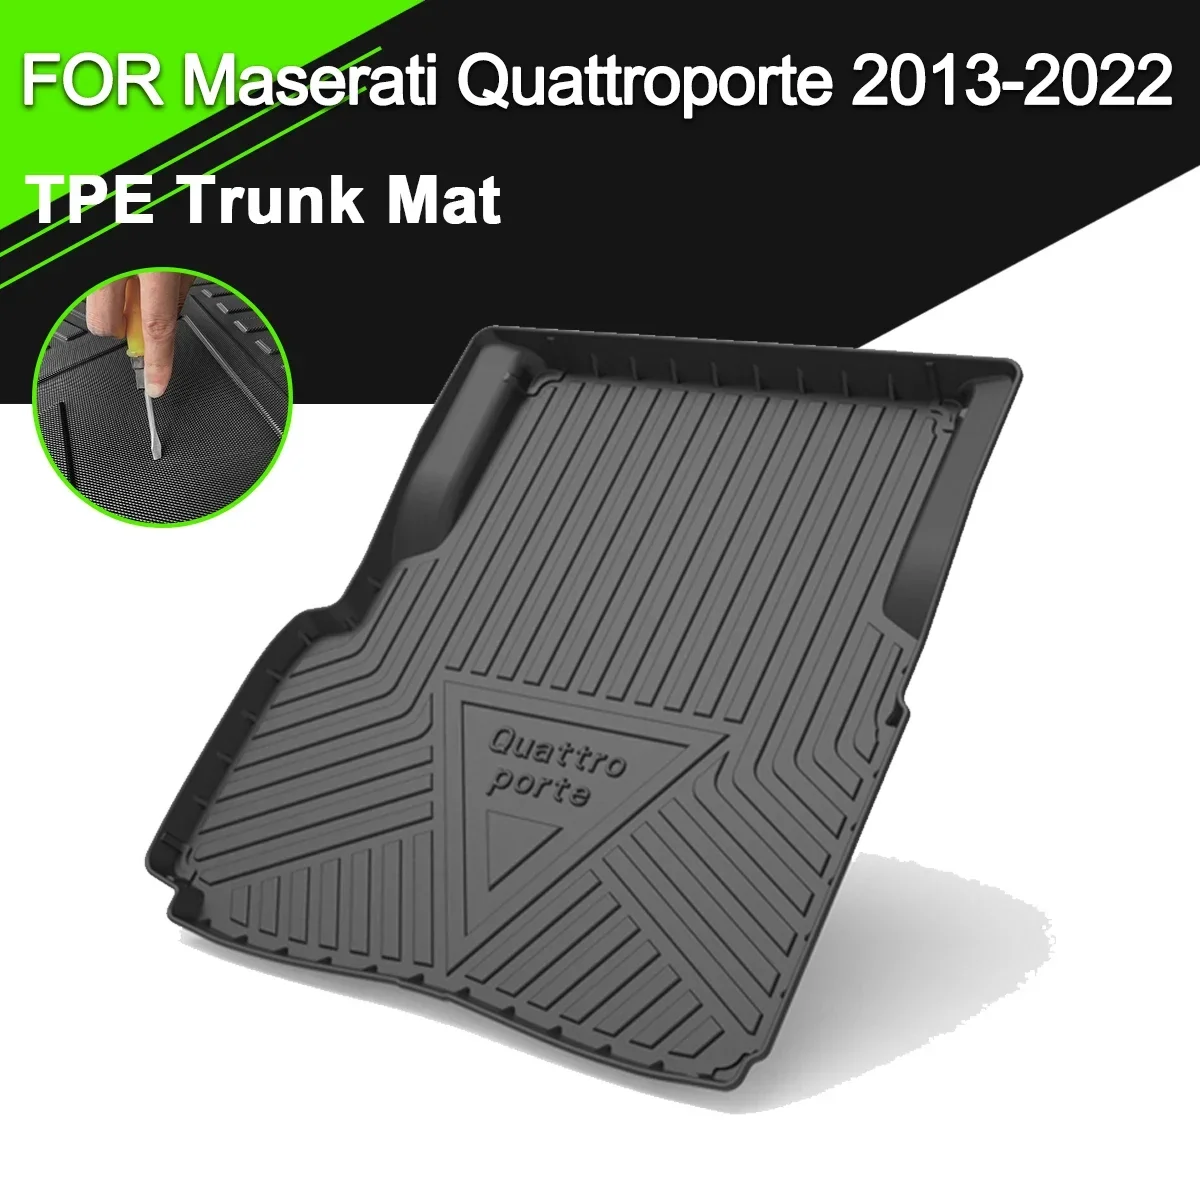 

Car Rear Trunk Cover Mat TPE Waterproof Non-Slip Rubber Cargo Liner Accessories For Maserati Quattroporte Ghibli Levante